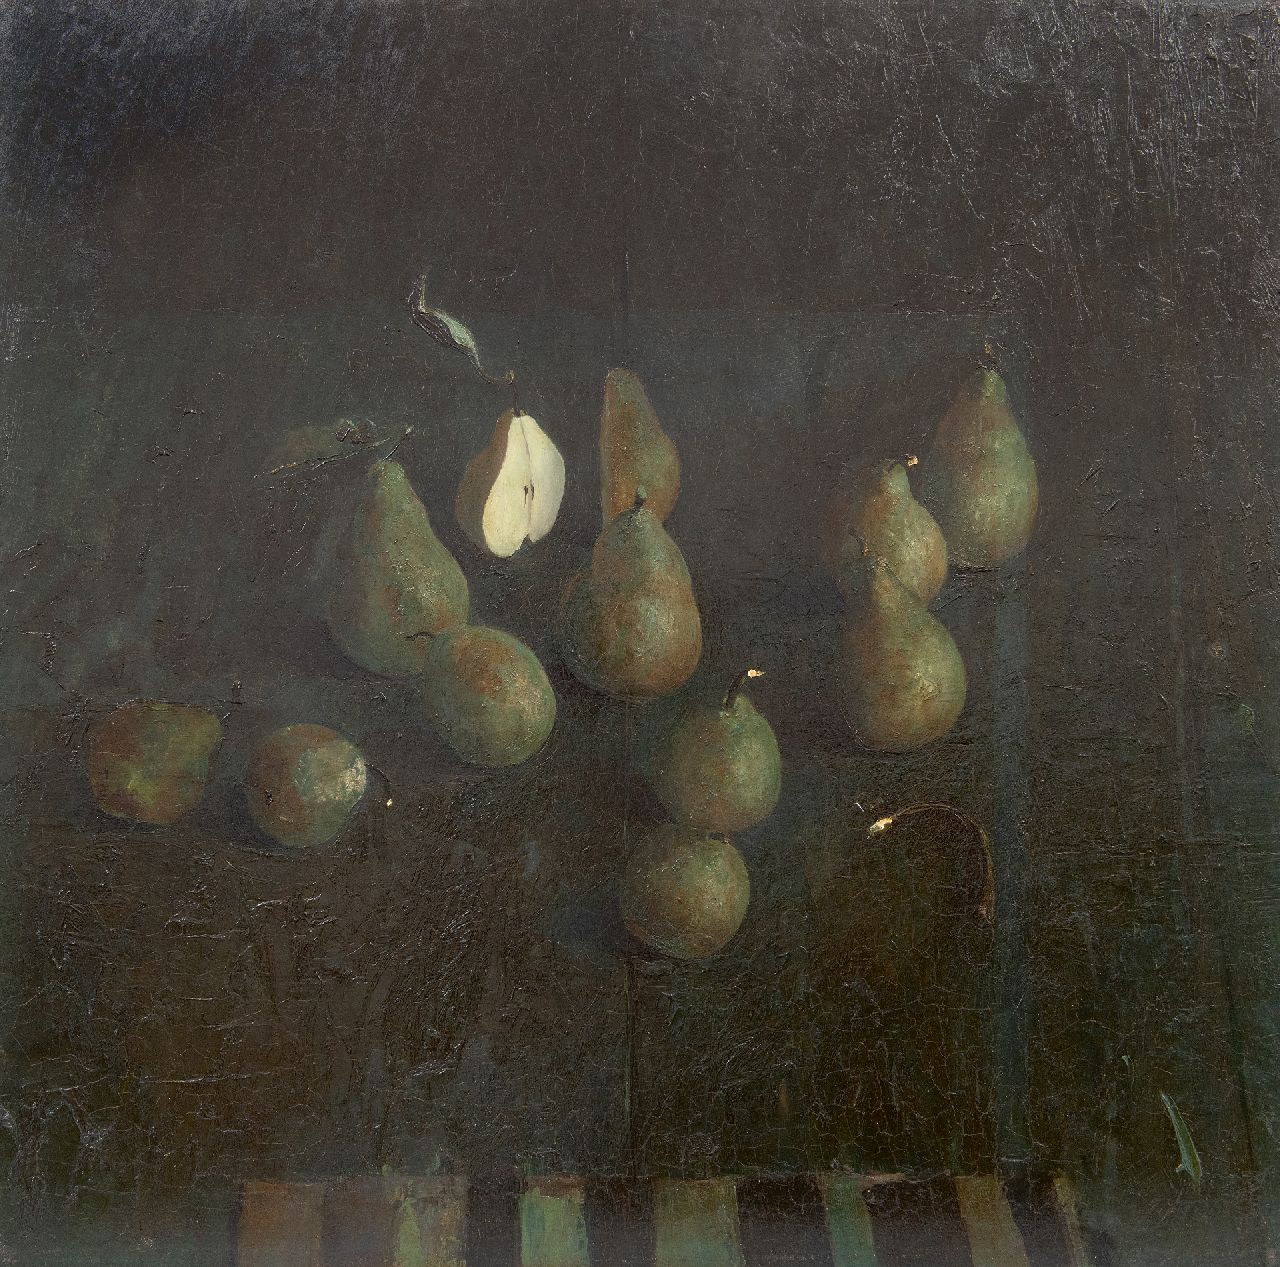 Kooi J. van der | Jan van der Kooi | Schilderijen te koop aangeboden | Peren, olieverf op board 59,5 x 60,0 cm, gesigneerd middenonder en gedateerd 1985